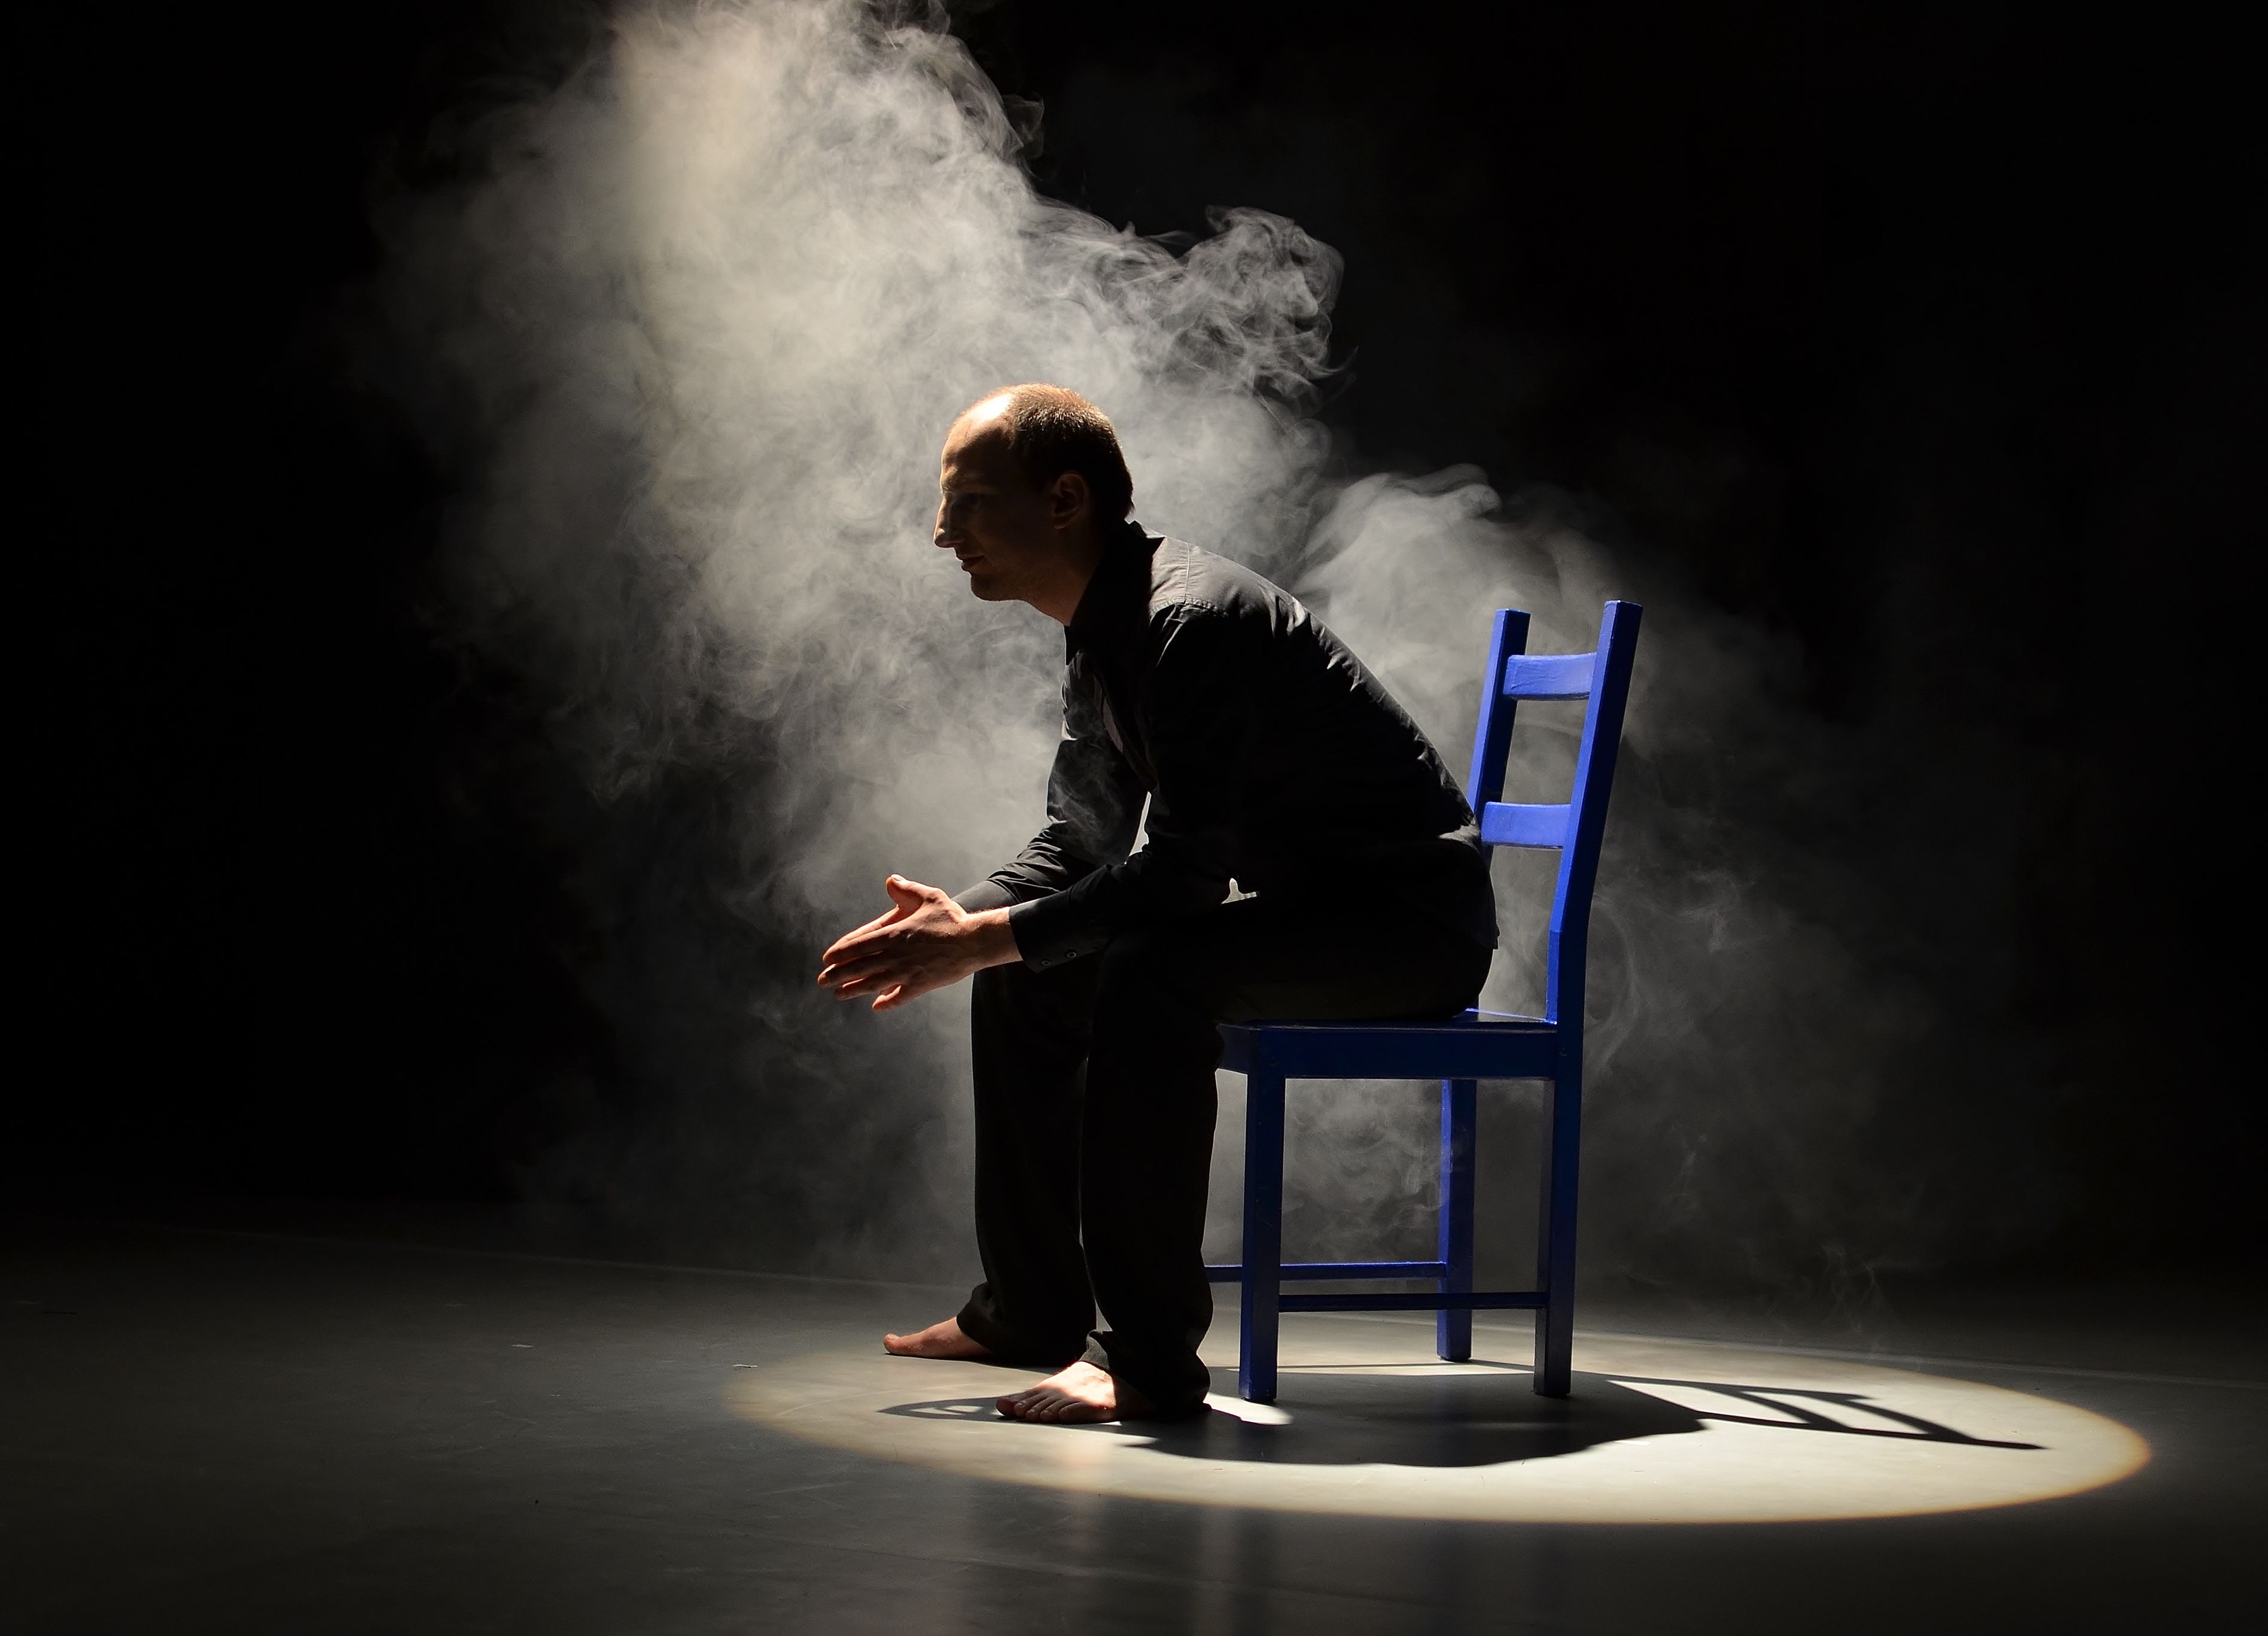 Dunkle Bühne, ein einziger Lichtstrahl fällt auf einen auf einem blauen Stuhl sitzenden Mann, der barfuß und schwarz bekleidet ist